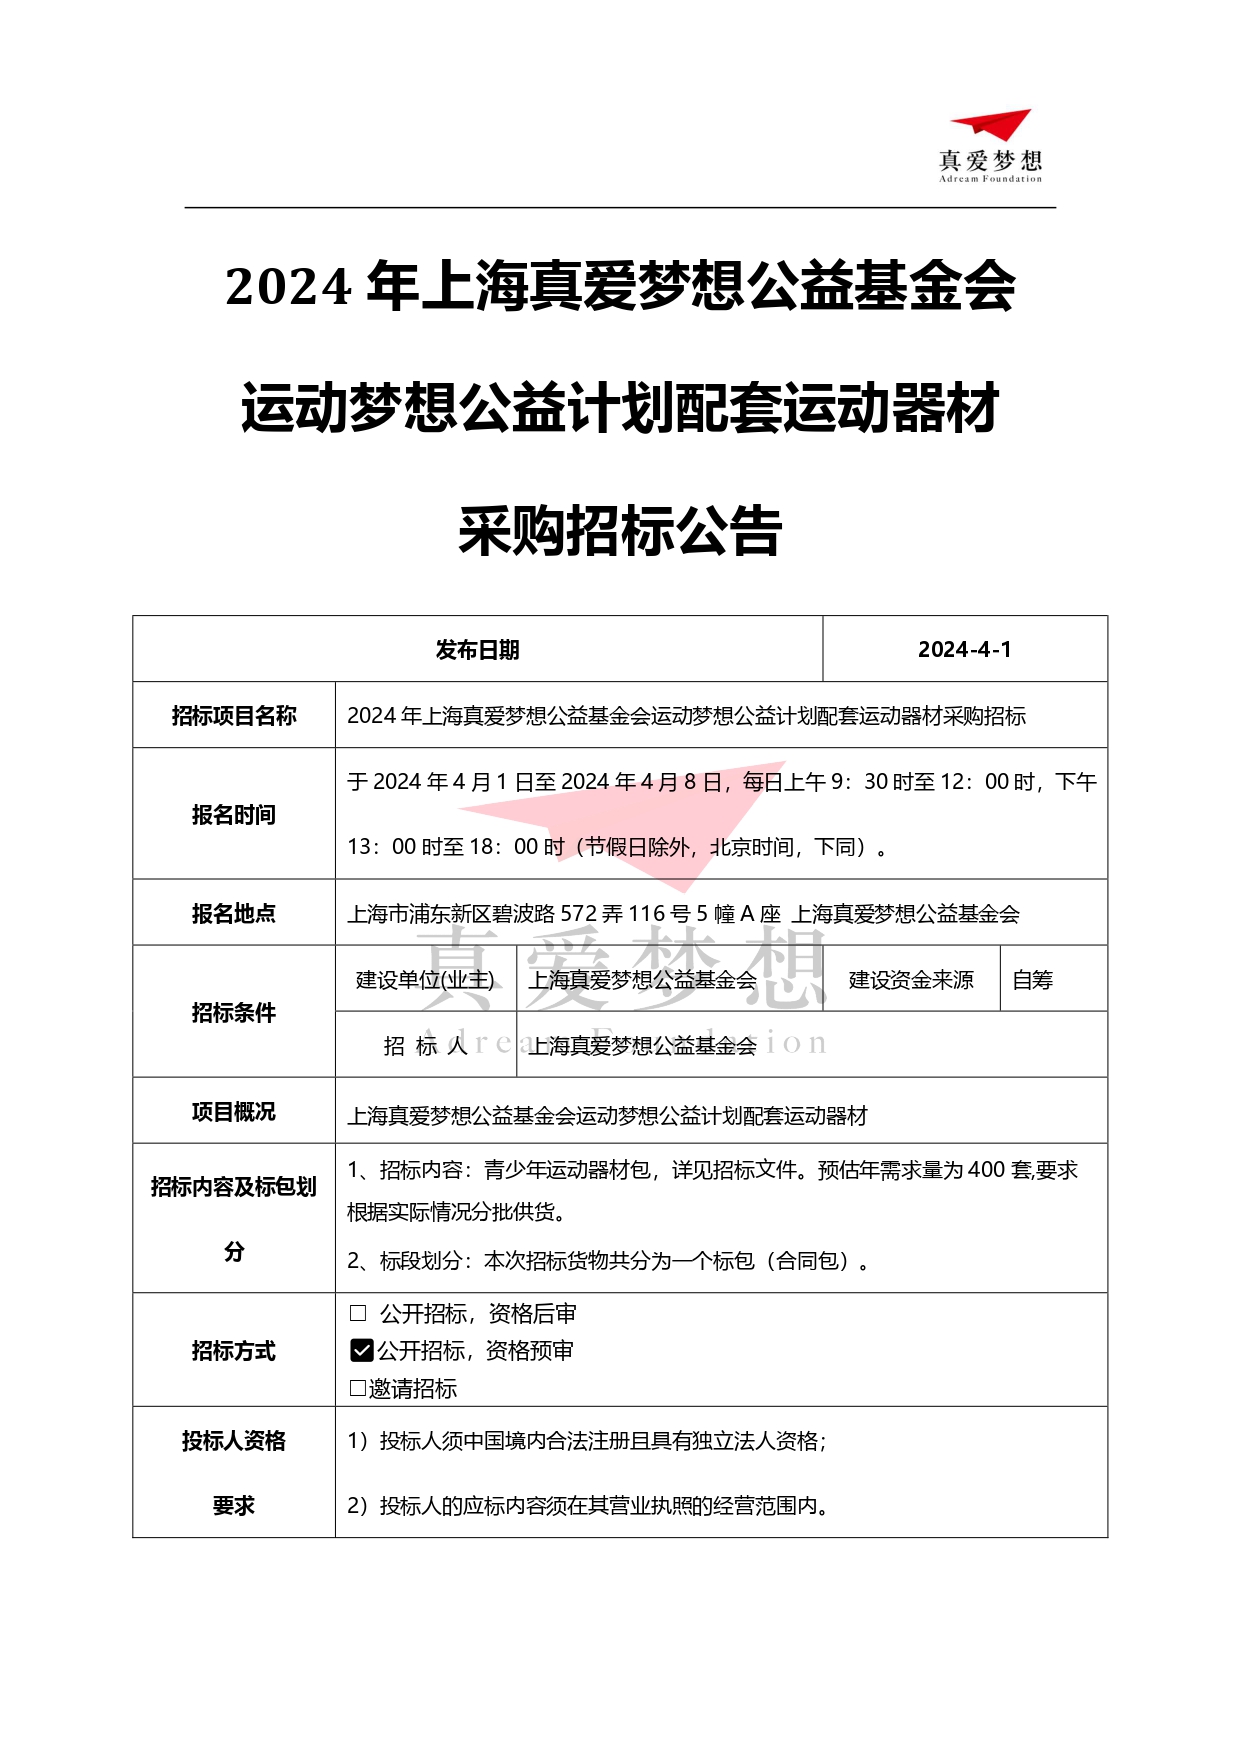 2024年上海真爱梦想公益基金会运动梦想公益计划配套运动器材采购招标公告_page-0001